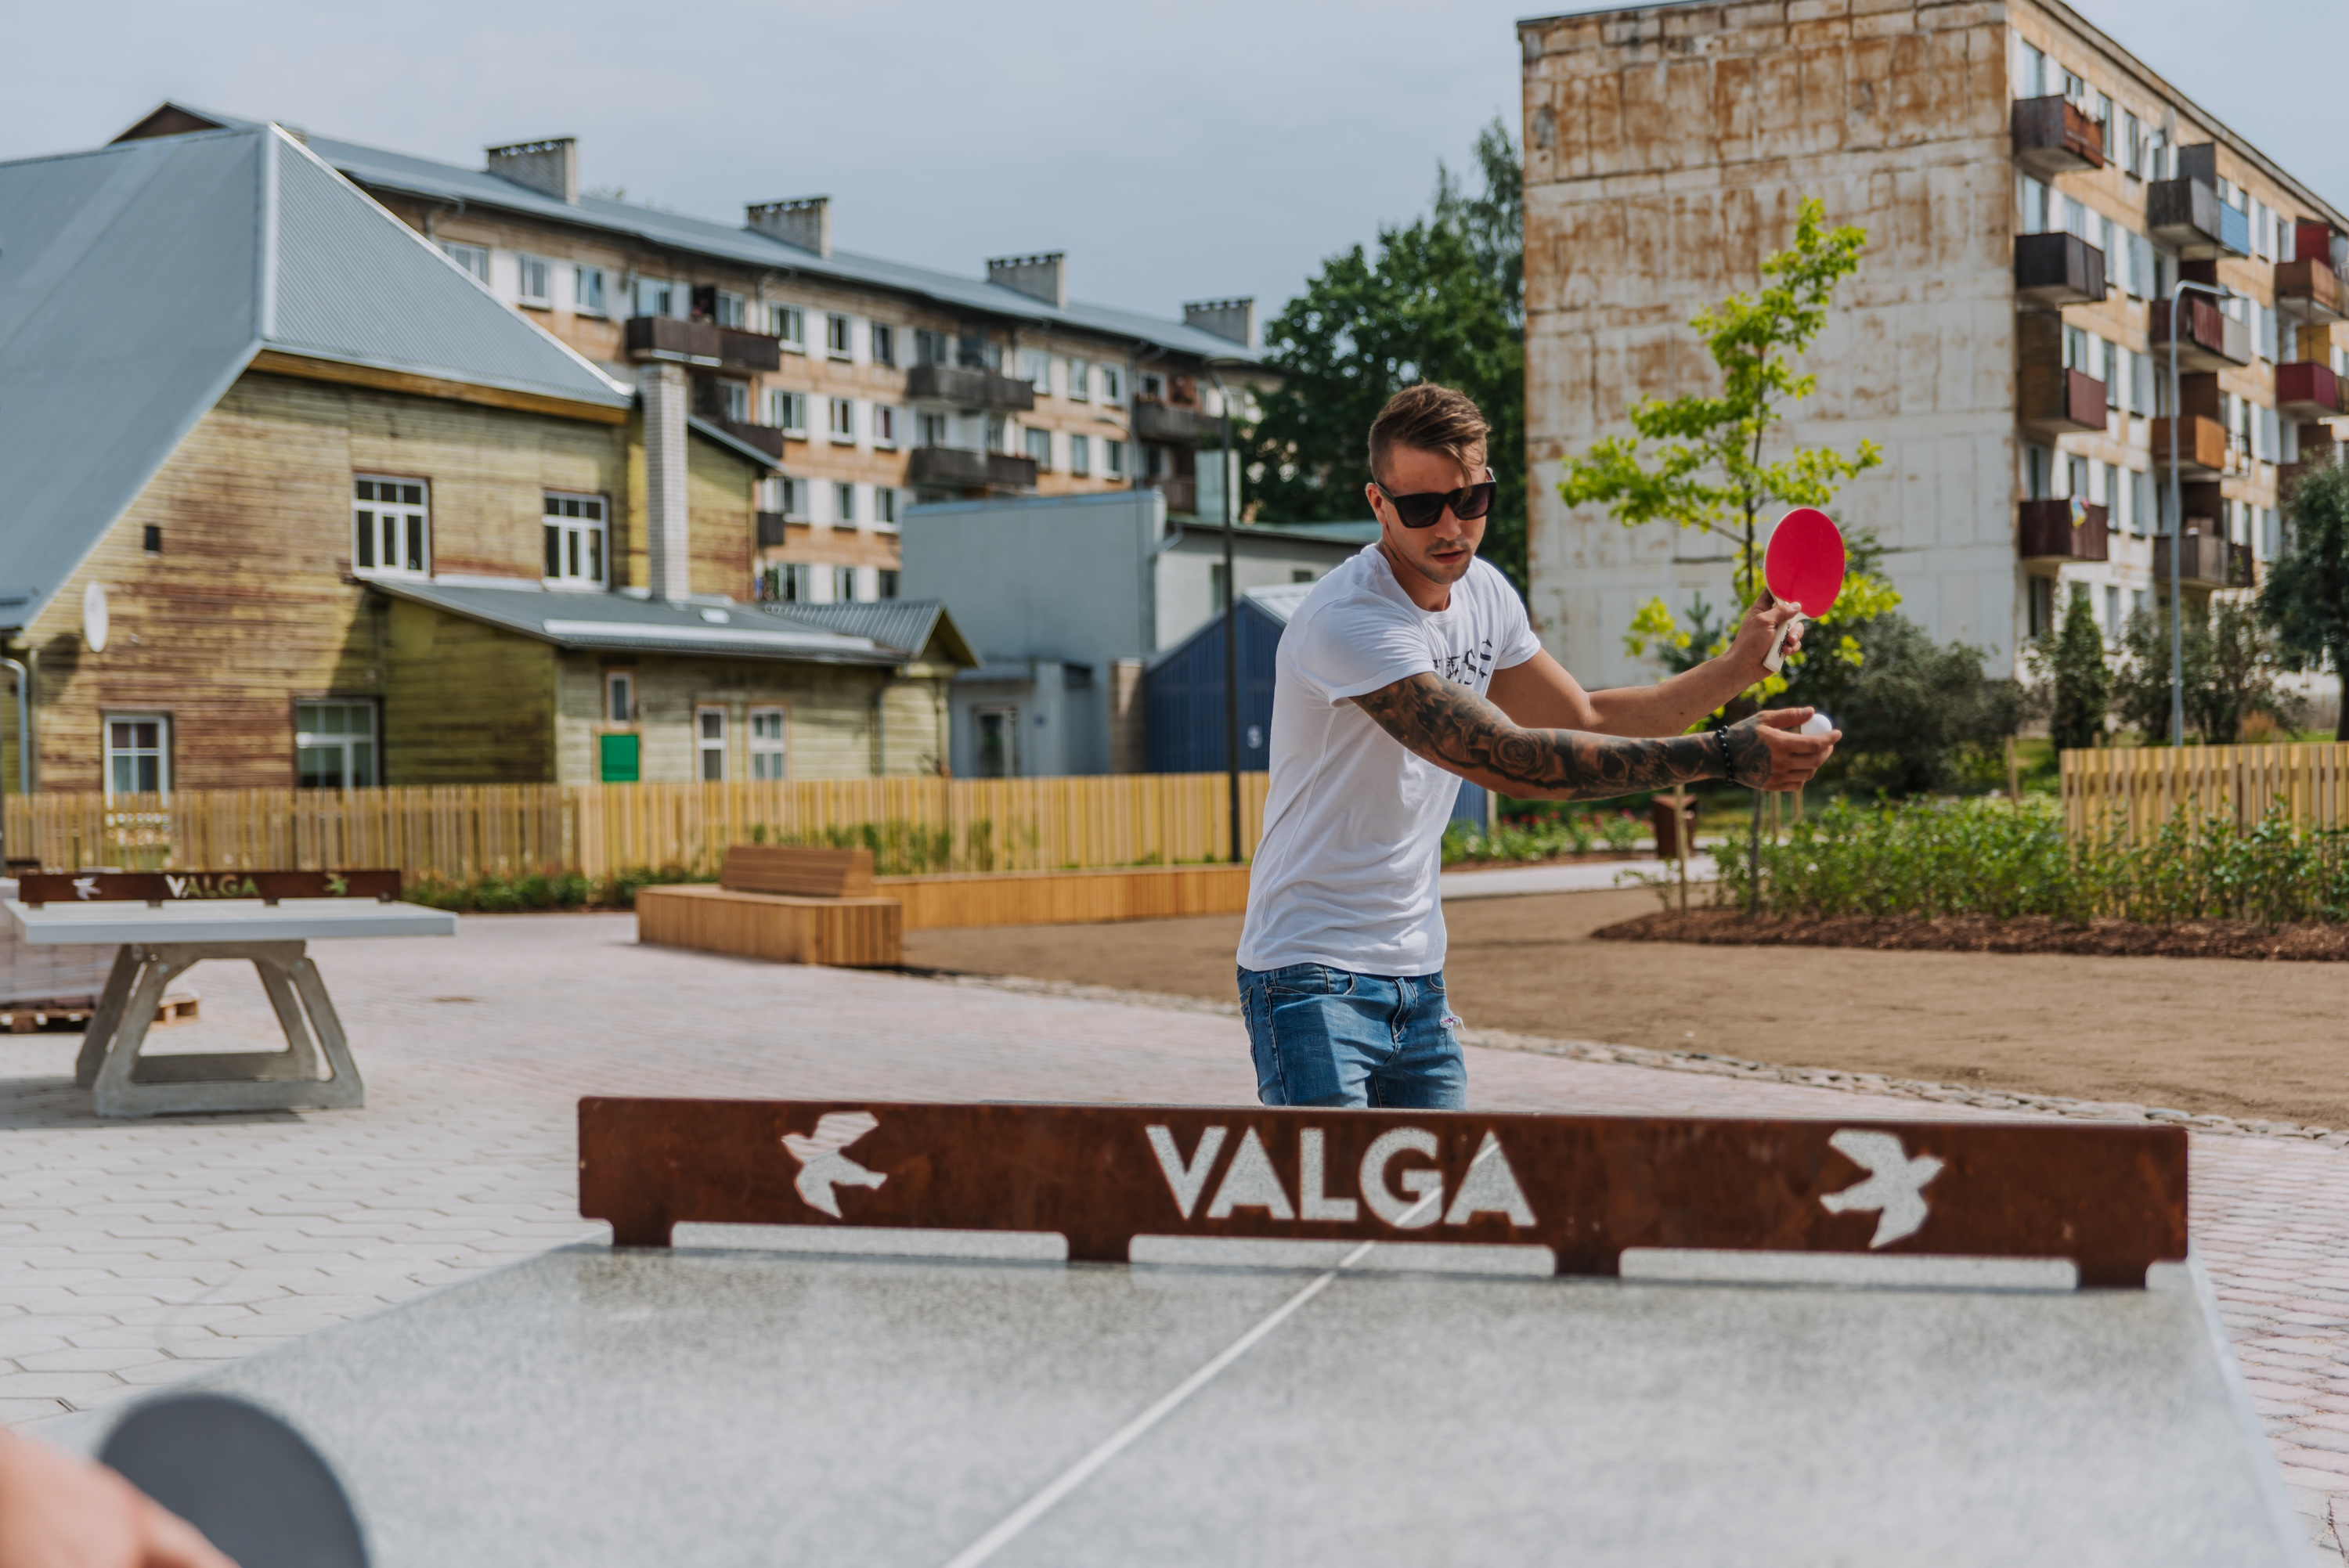 Plac zabaw Lars Laj w Estonii